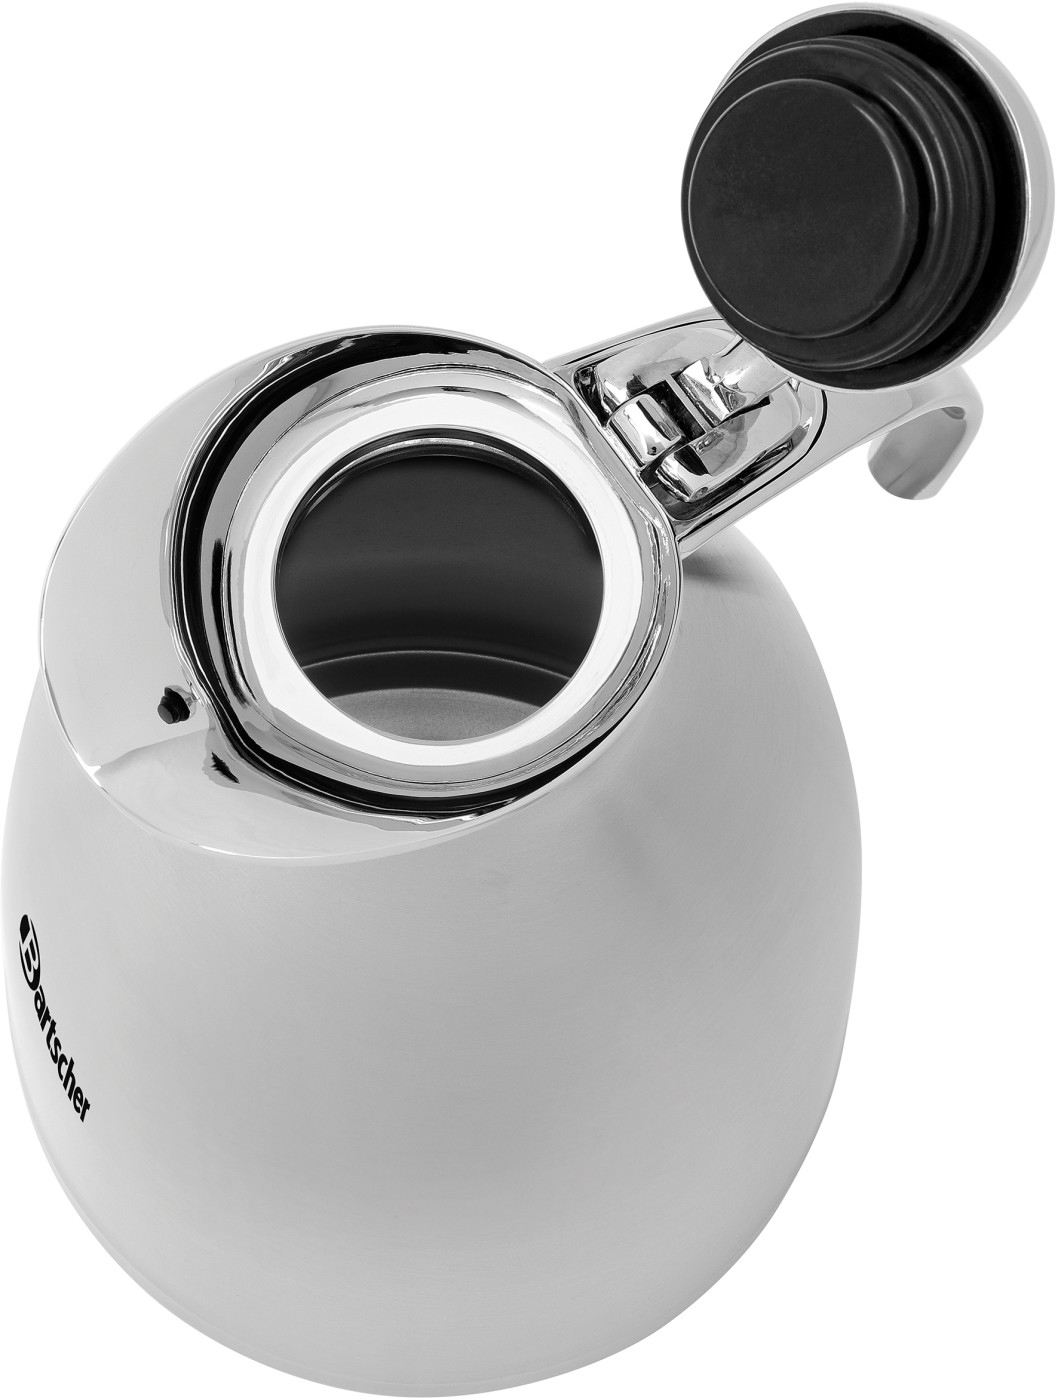  Bartscher Thermo jug 1.5L-VST 